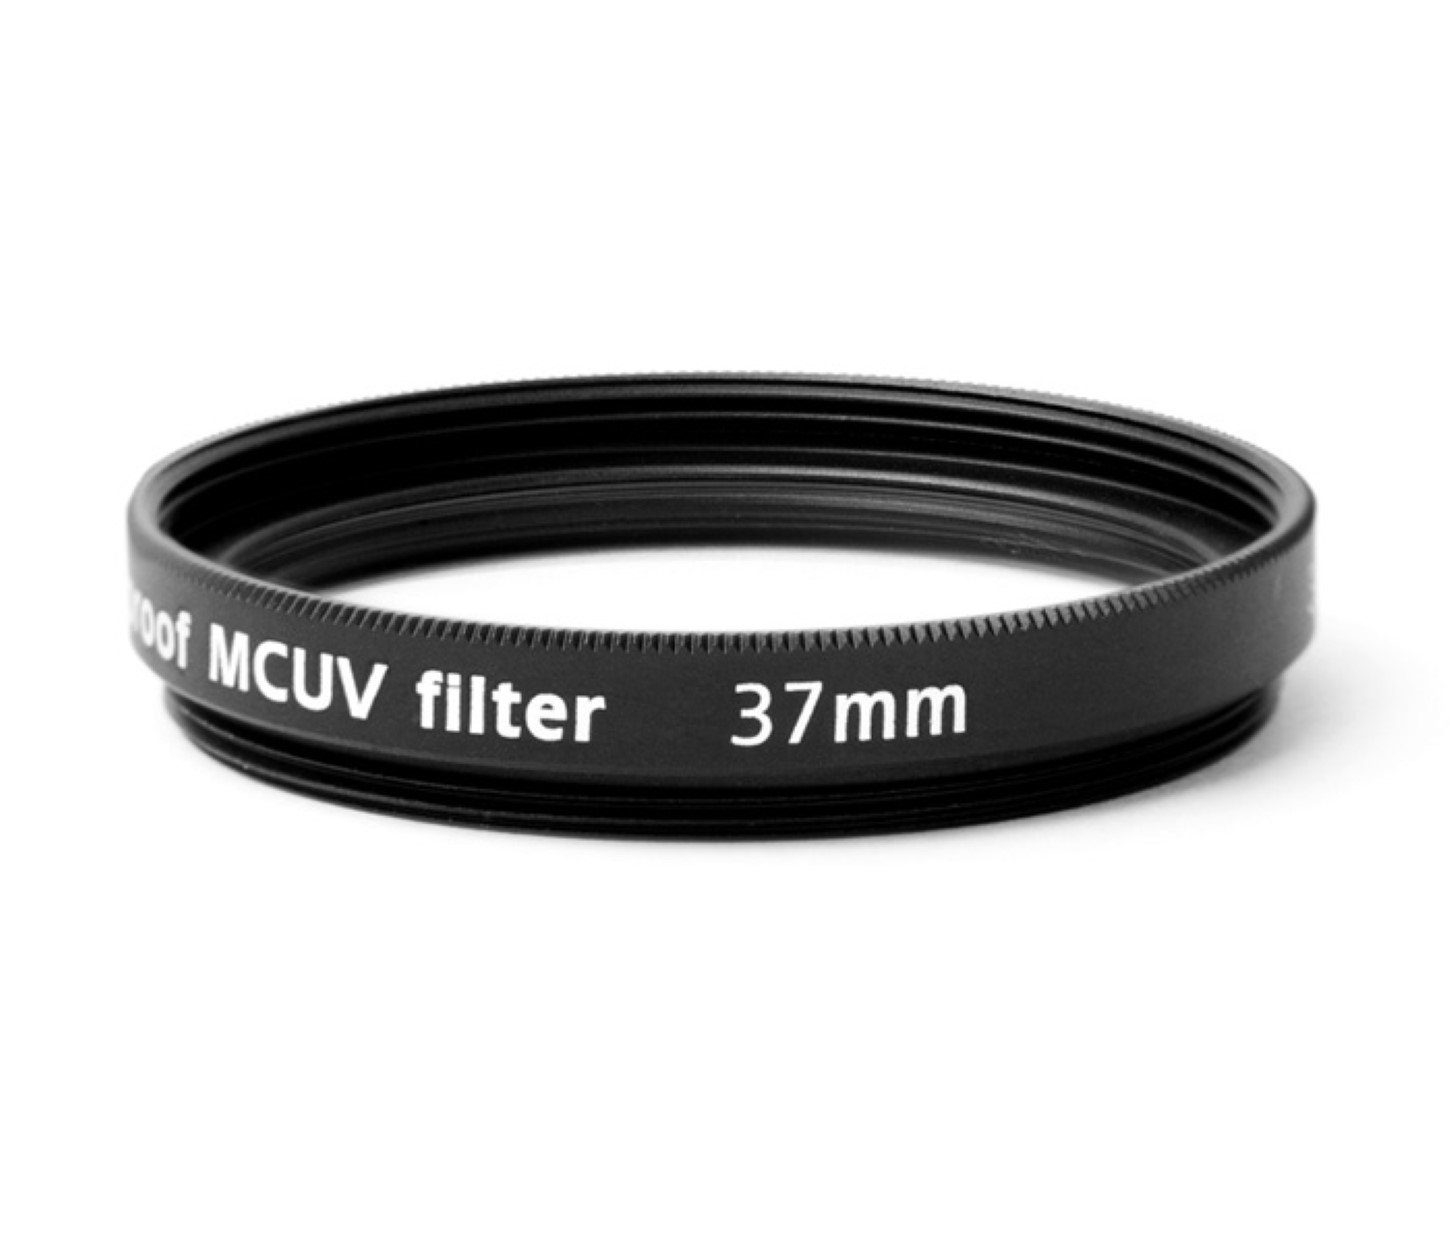 Pixel Multicoated UV wasserfest Filter vergütet 37mm, Foto-UV-Filter